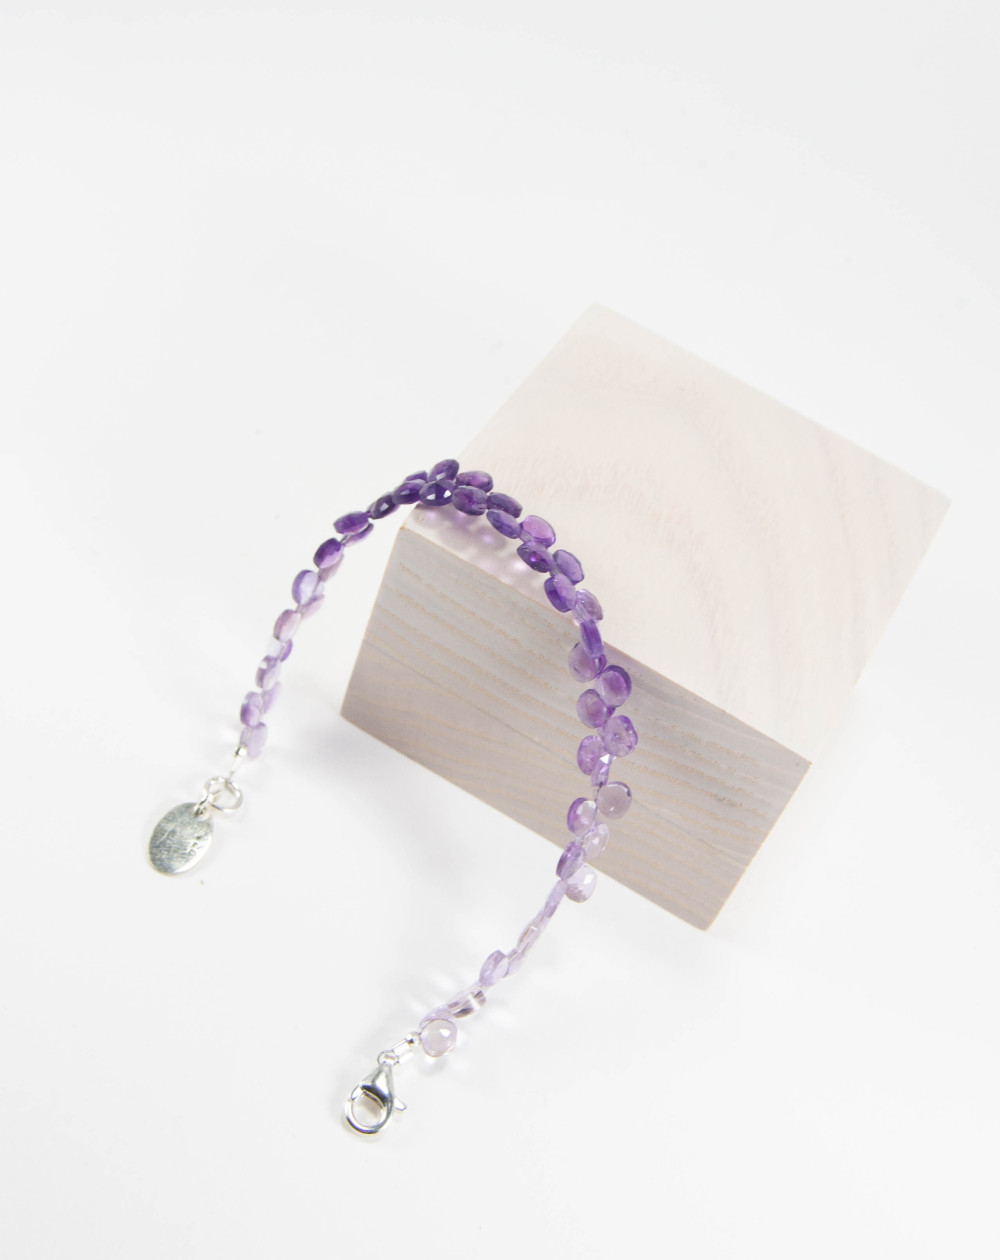 Bracelet briolettes Améthyste, argent 925, Sanùk Création, Créateurs français de bijoux en pierres fines, Bayonne